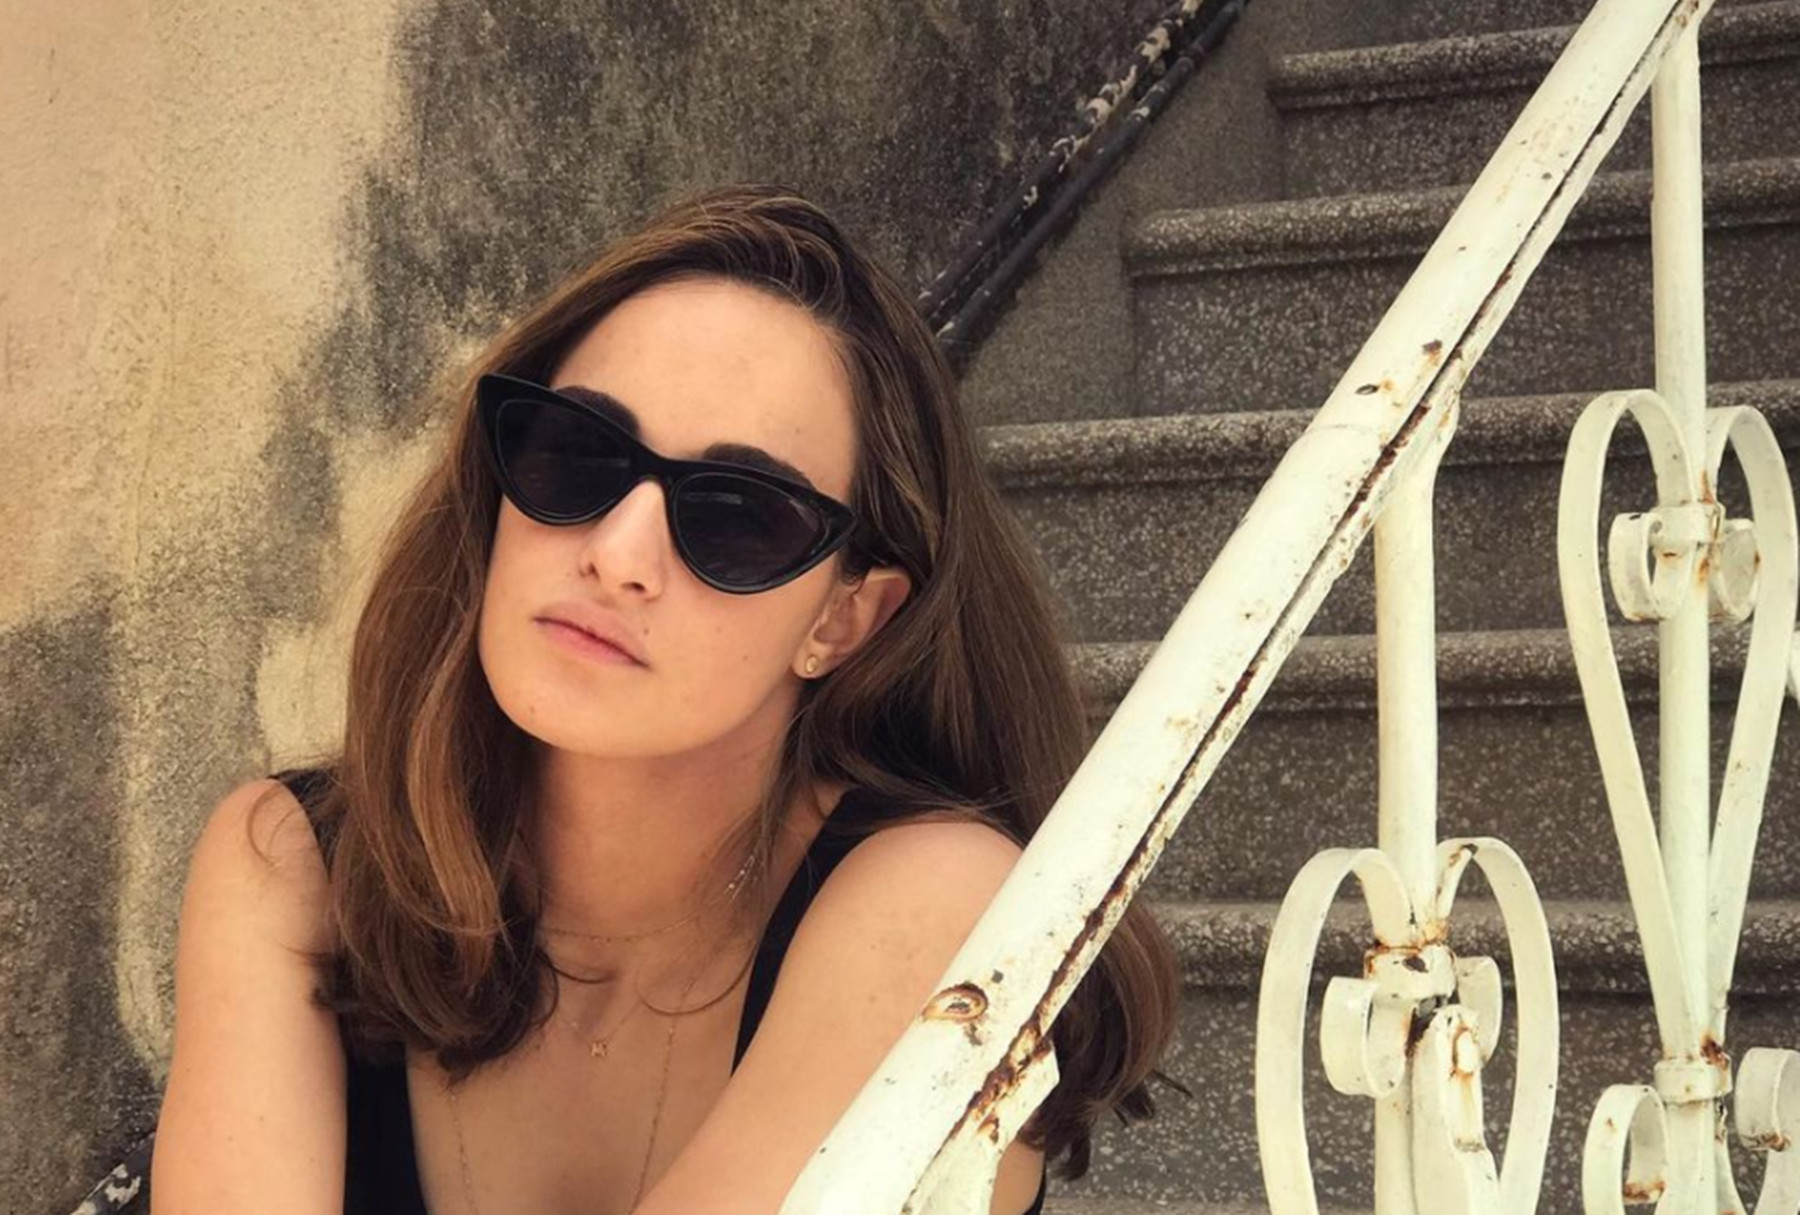 Μαρία Βοσκοπούλου Instagram: Η πρώτη ανάρτηση μετά τον θάνατο του πατέρα της